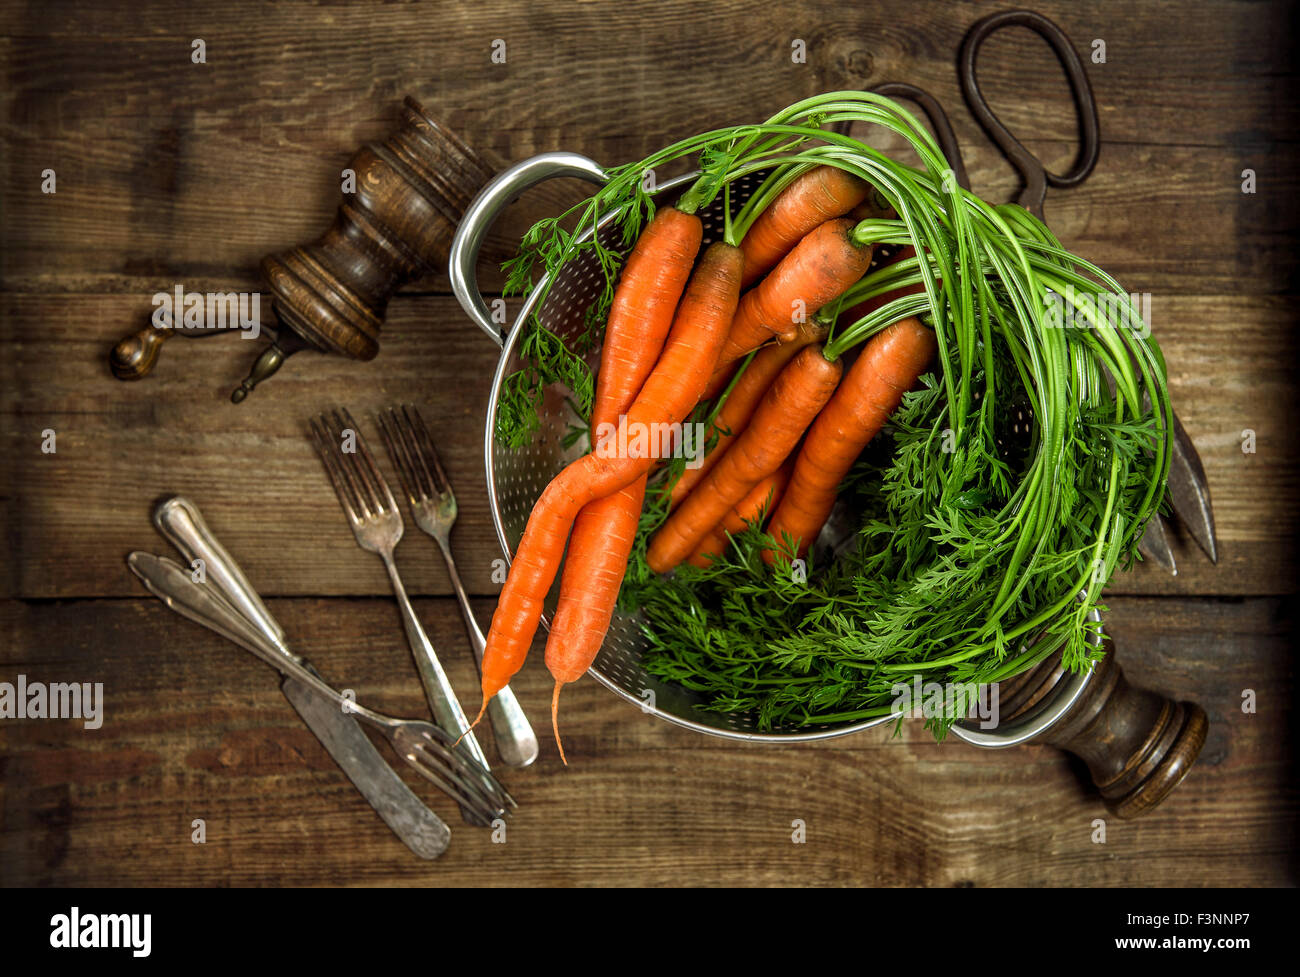 Les carottes avec feuilles vertes sur fond de bois rustique. Légume. Concept alimentaire du pays. Tons style vintage photo Banque D'Images